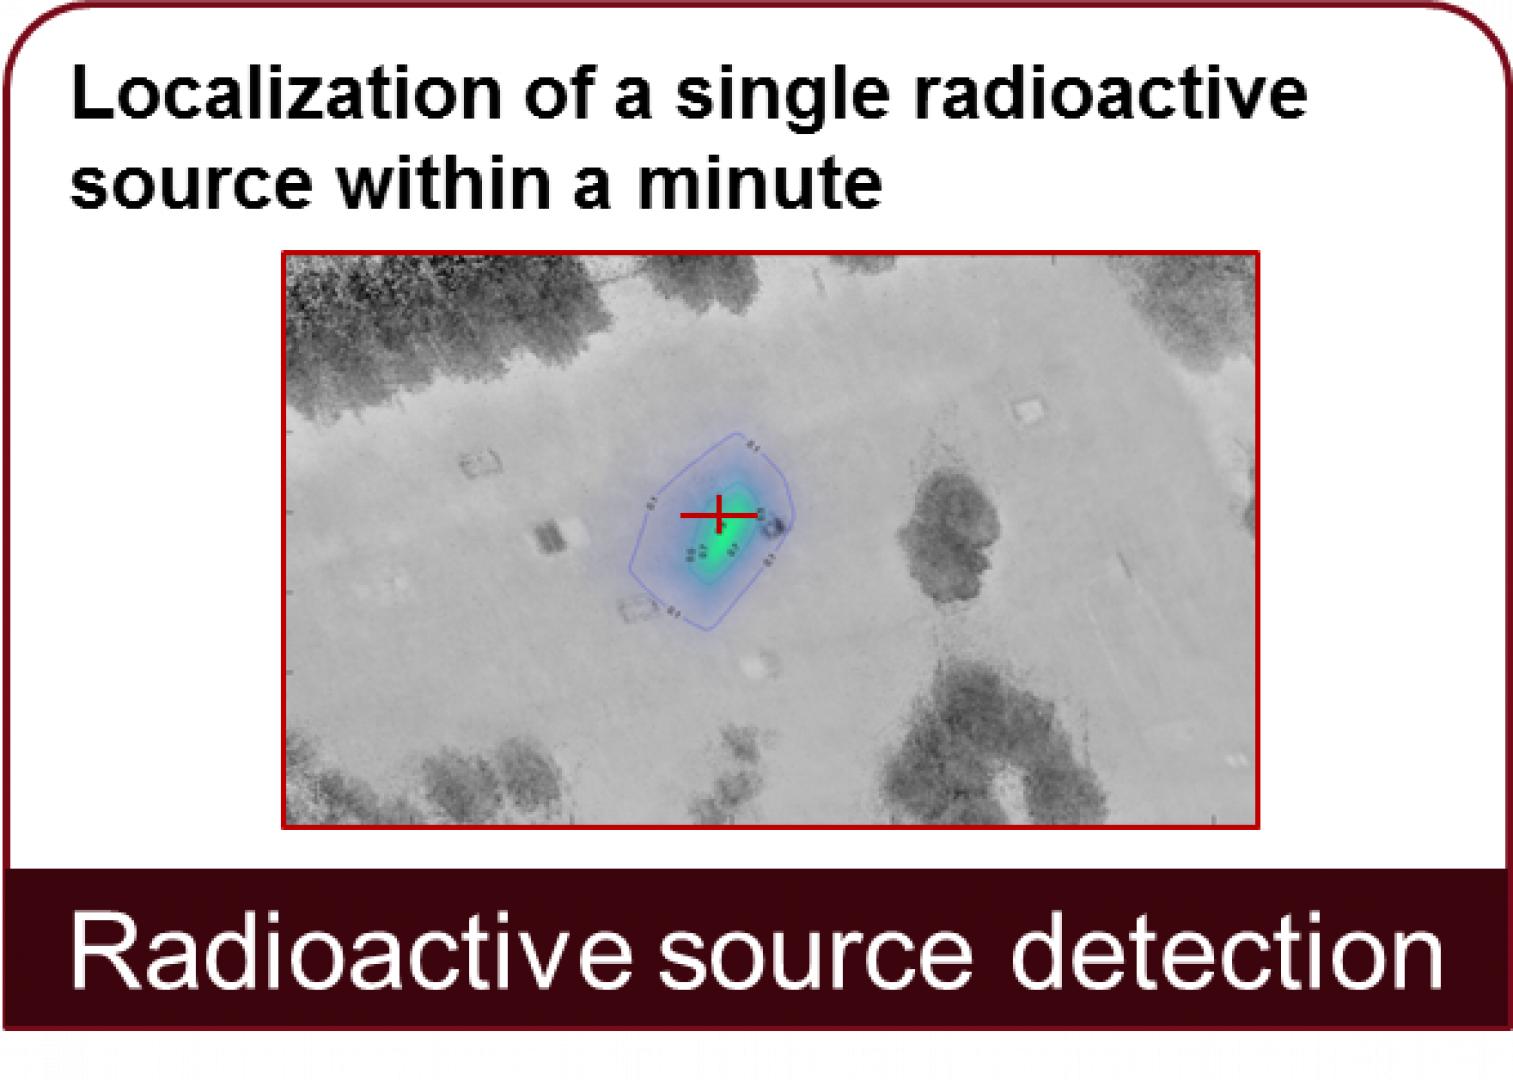 Détection de sources radioactives : Localisation d'une source radioactive unique en l'espace d'une minute